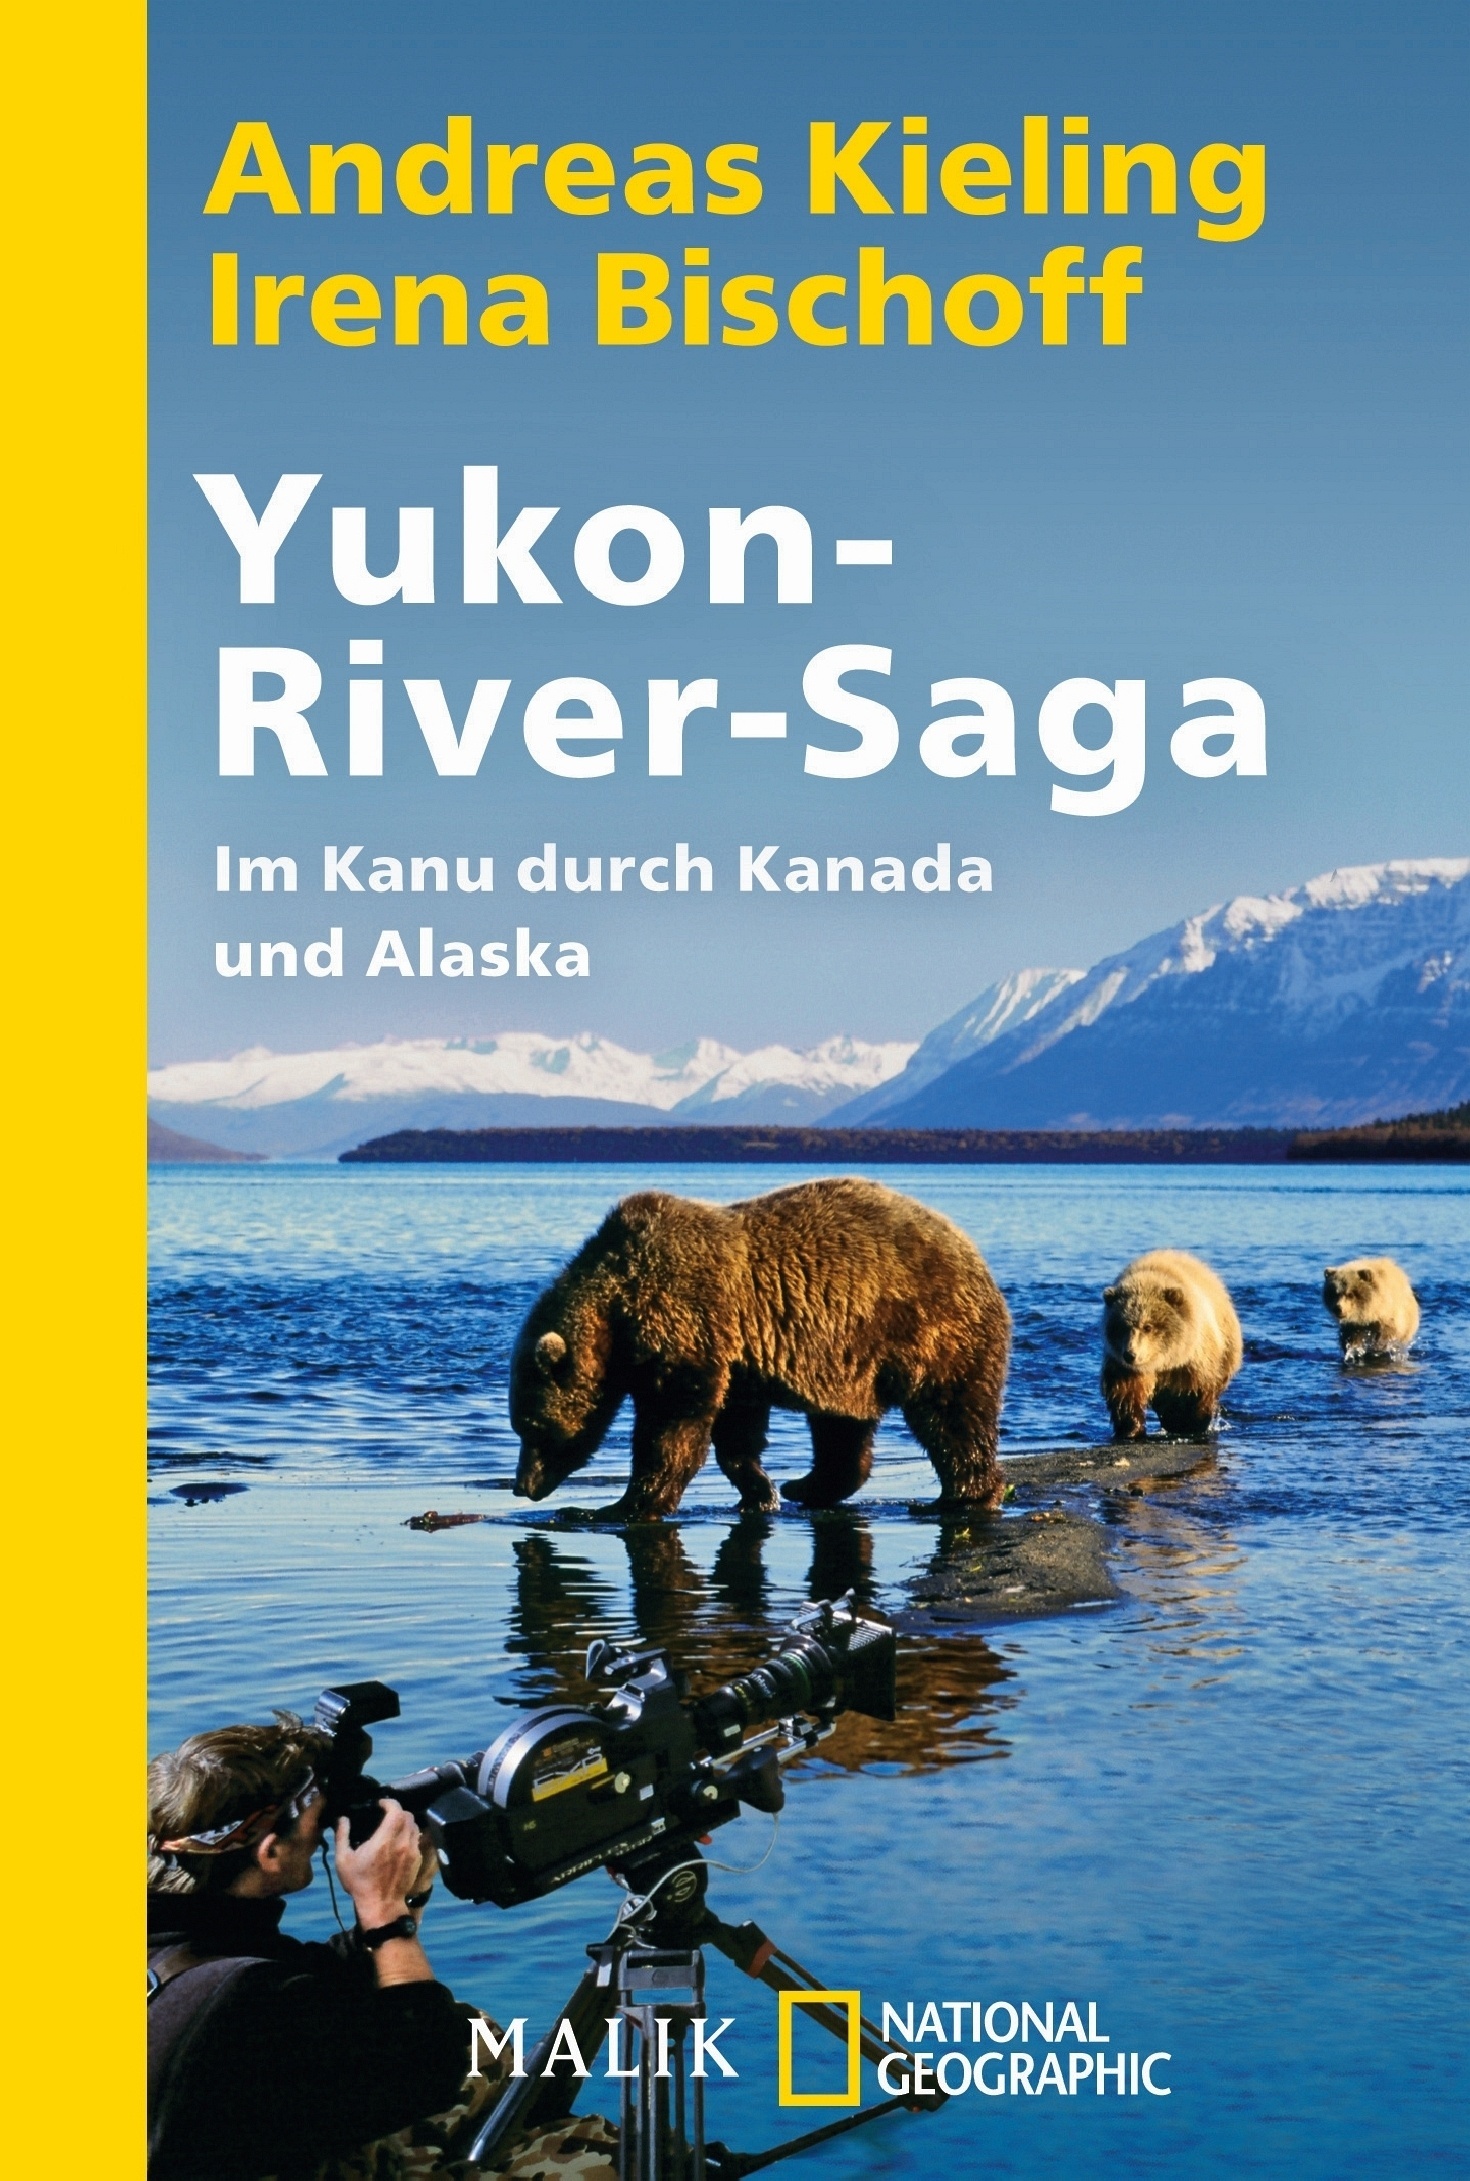 Yukon-River-Saga - Andreas Kieling  Irena Bischoff  Taschenbuch